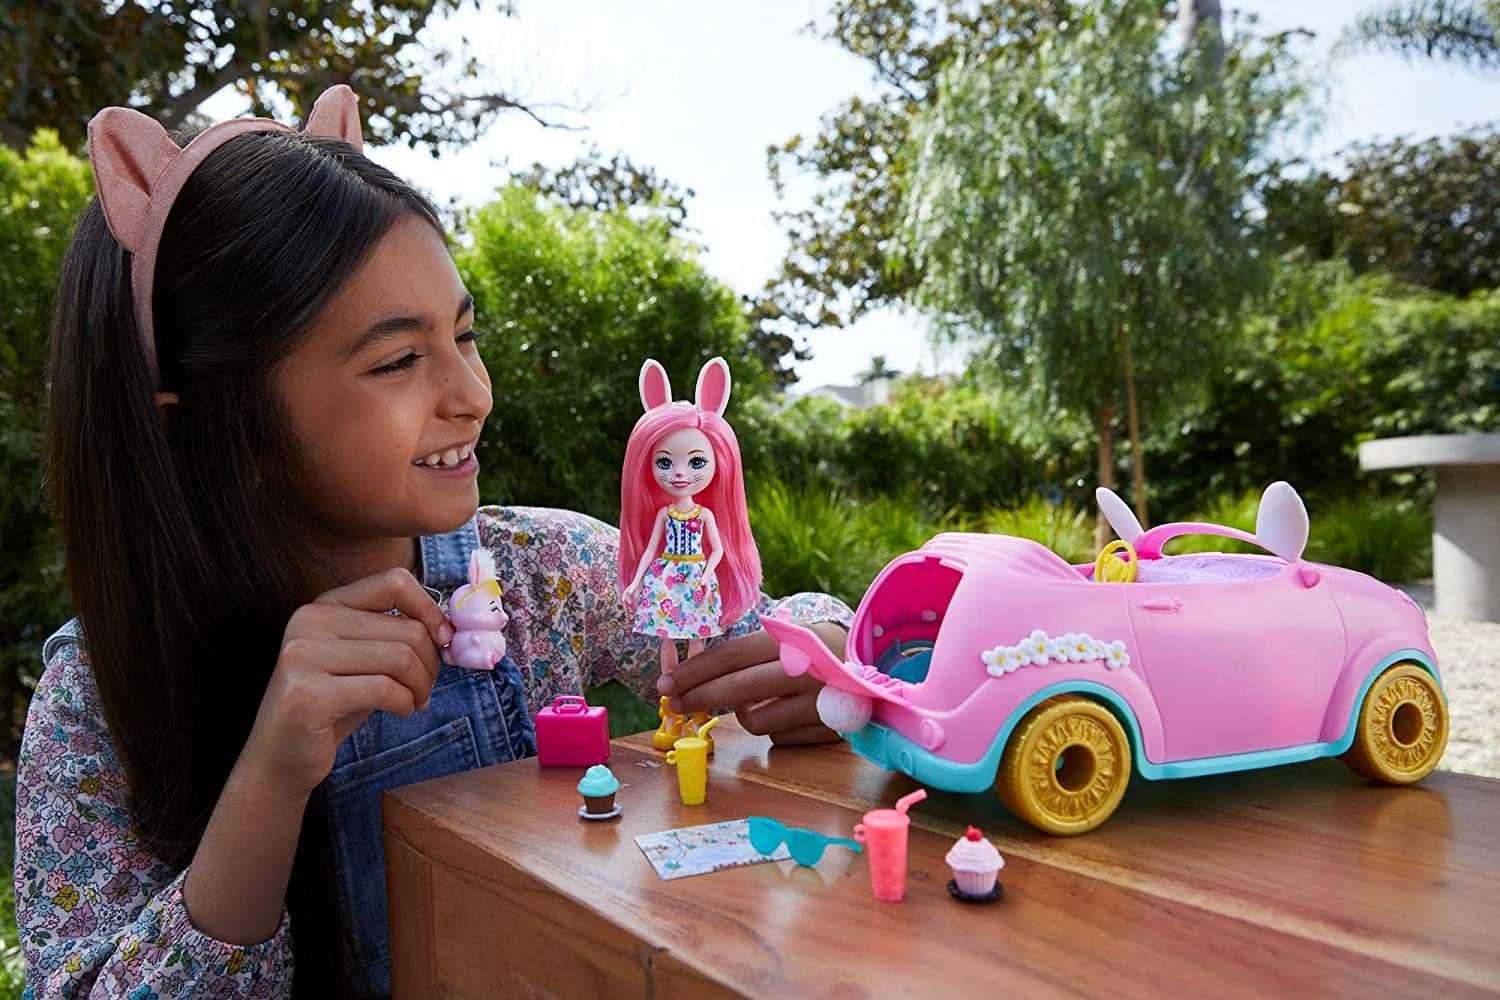 Энчантималс Машинка с куклой Бри Кролик Enchantimals Bunnymobile Car